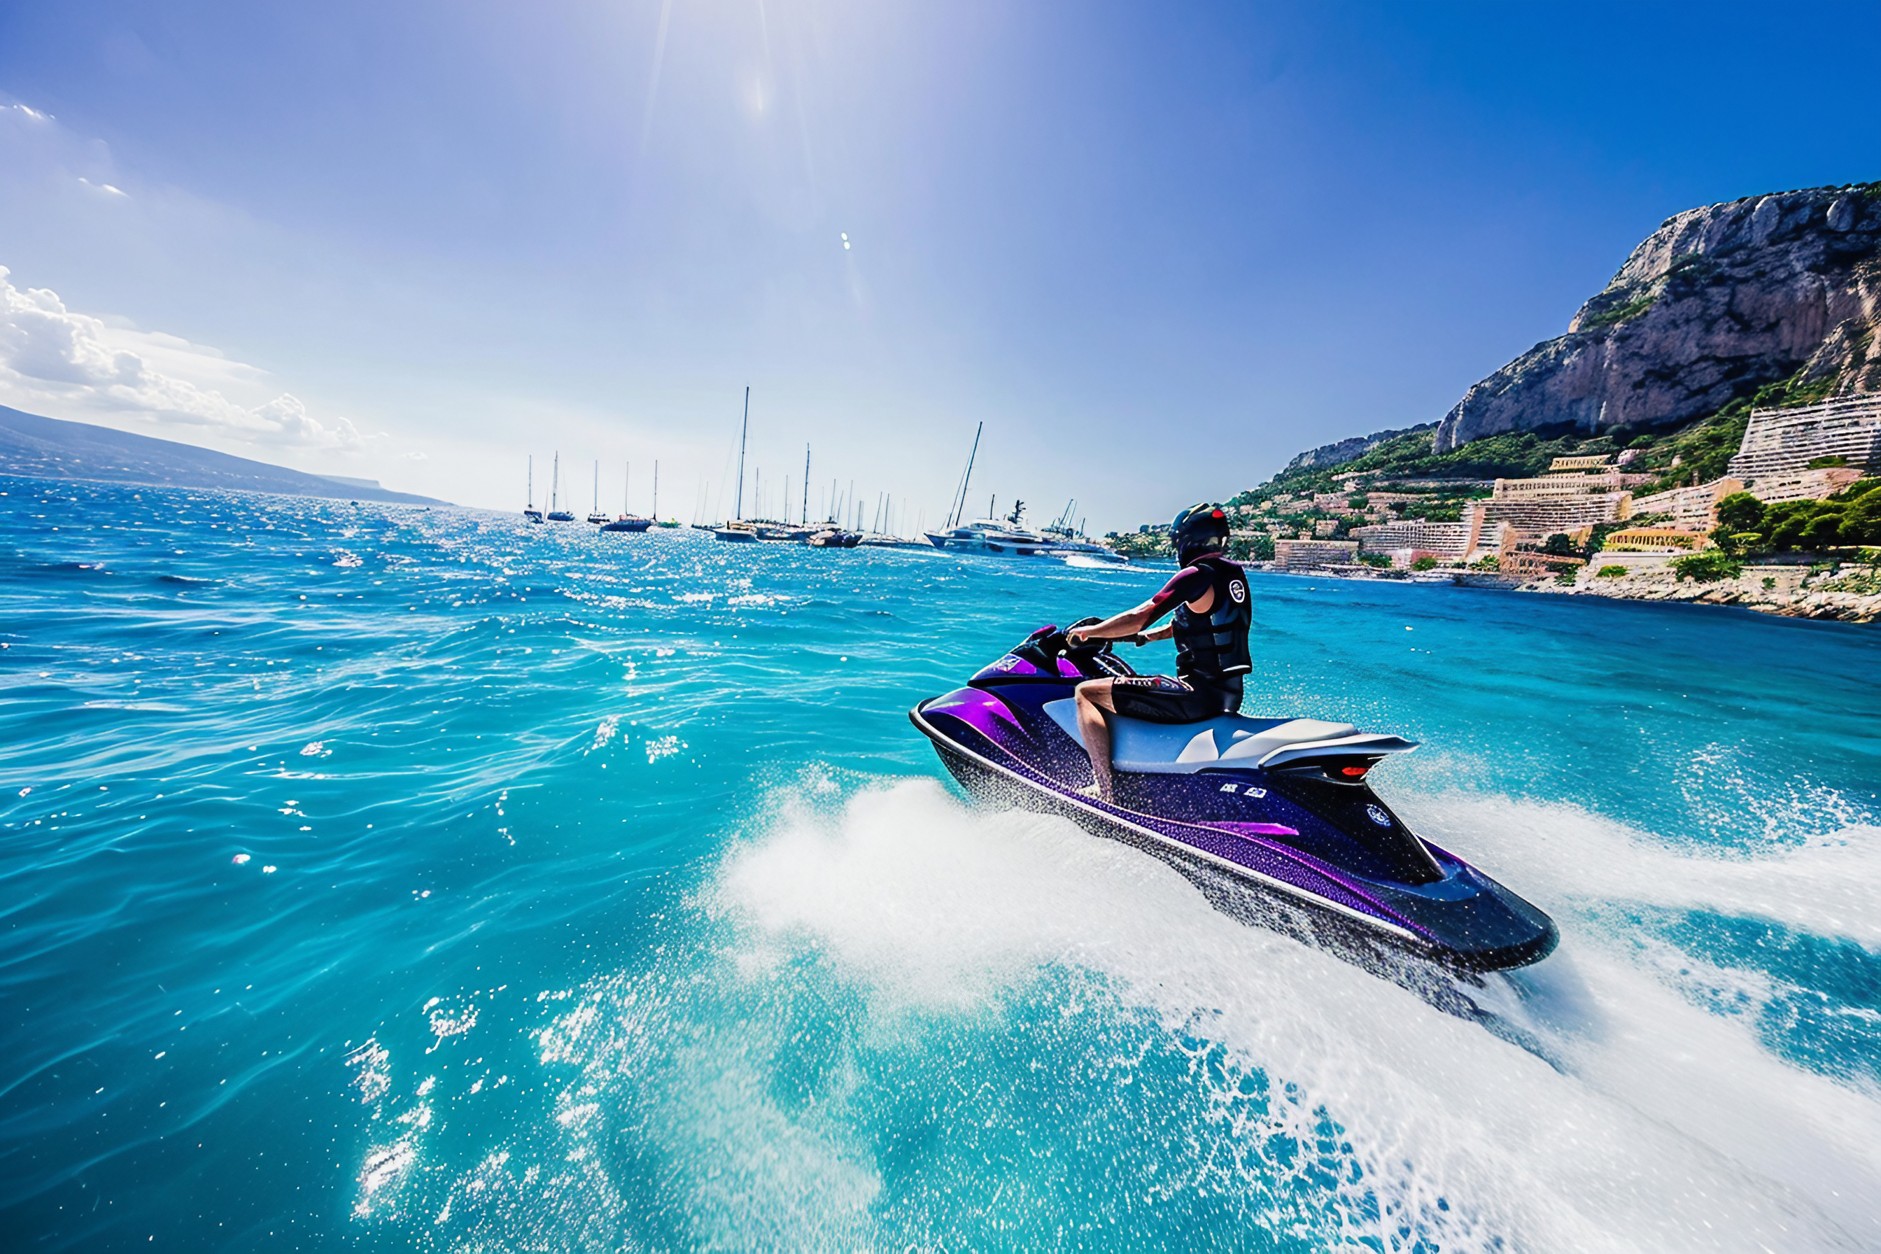 Sports nautiques en mer Méditerranée : guide des choses à faire à Monaco